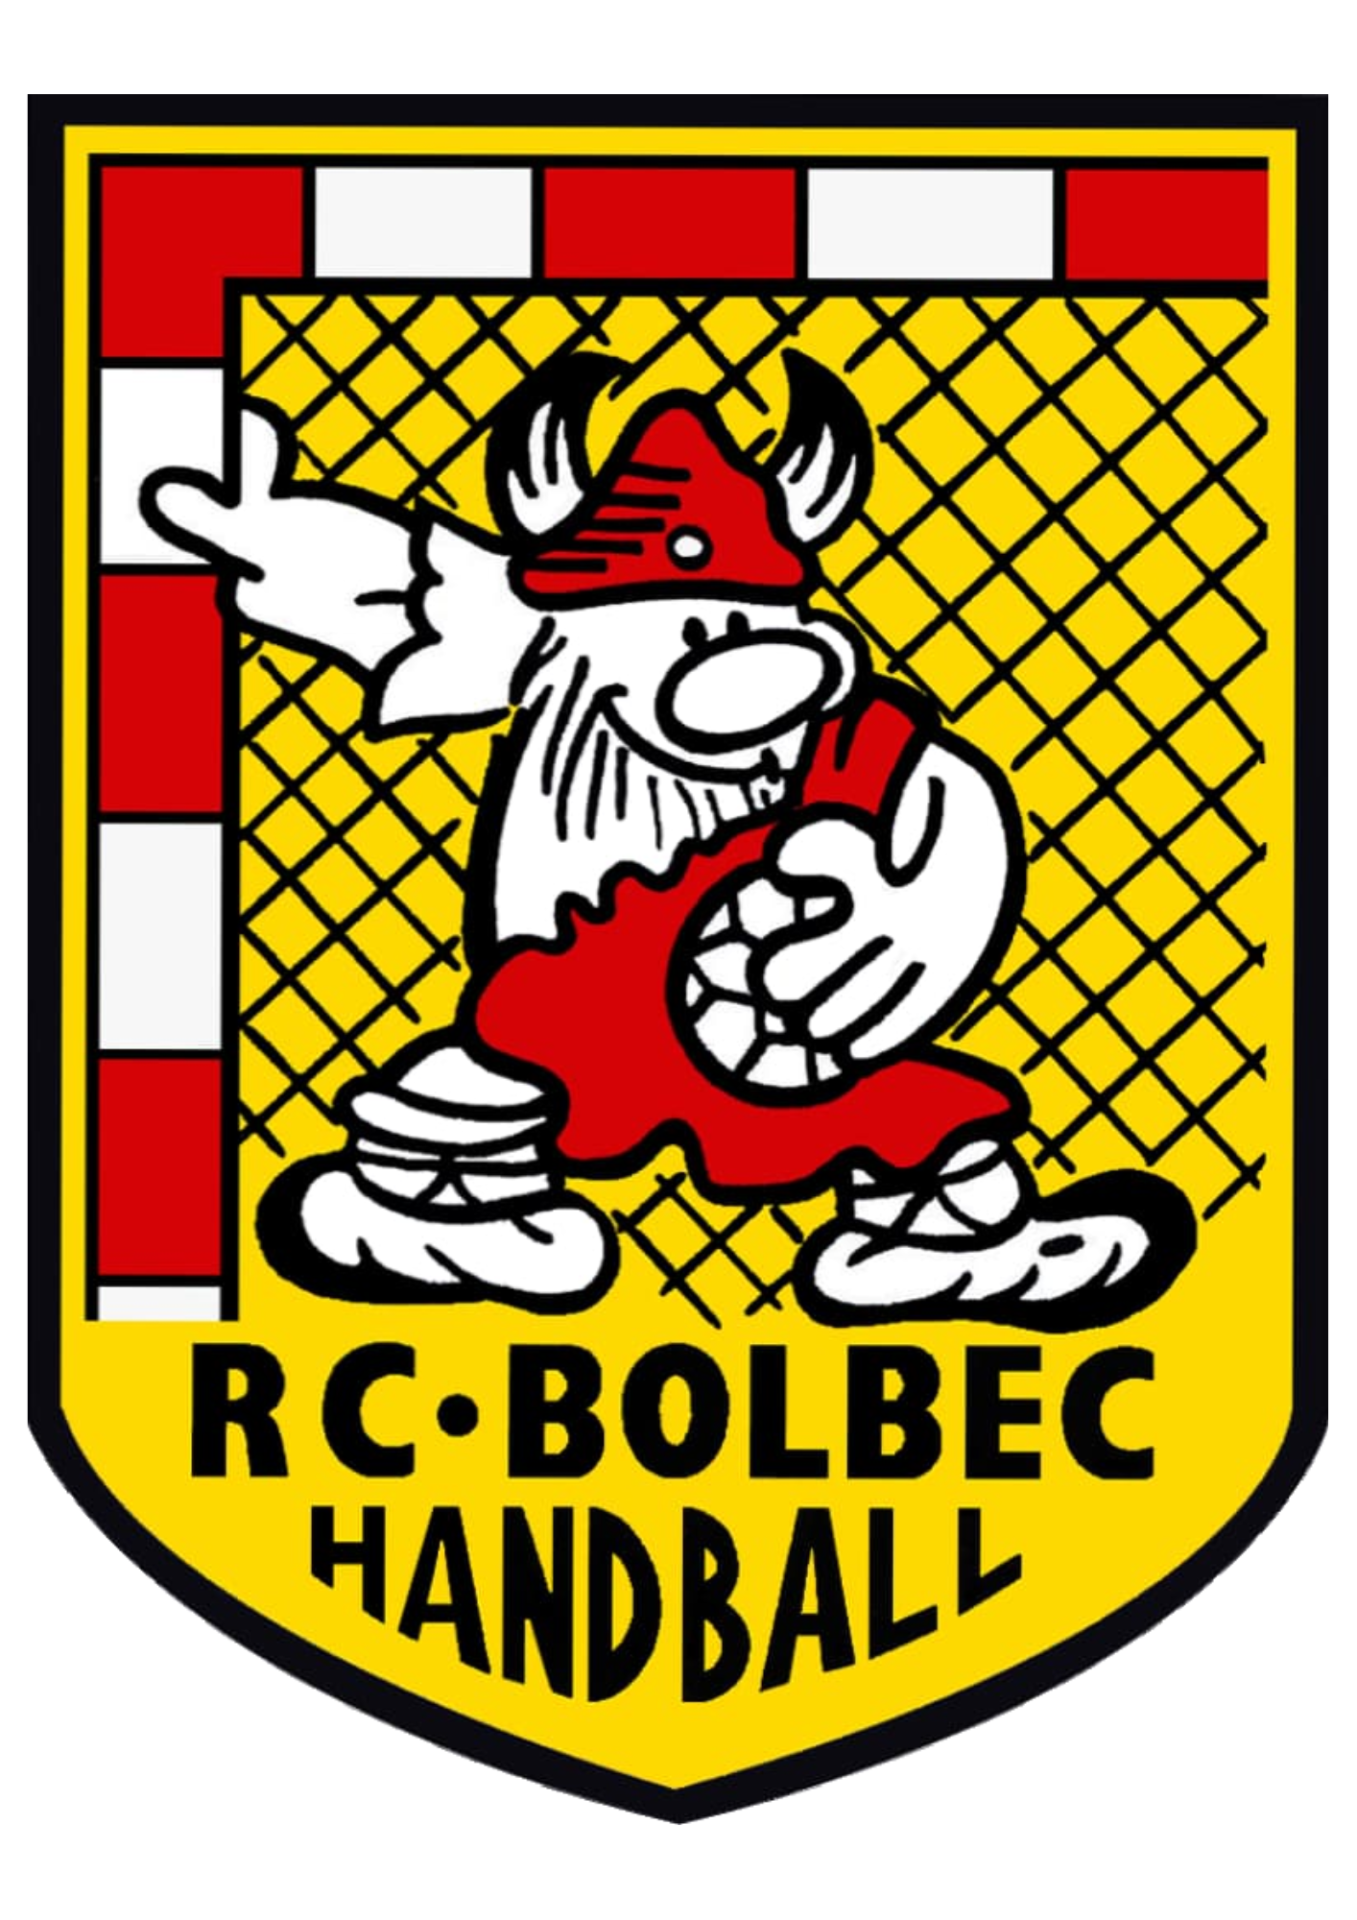 R.C.BOLBEC HANDBALL